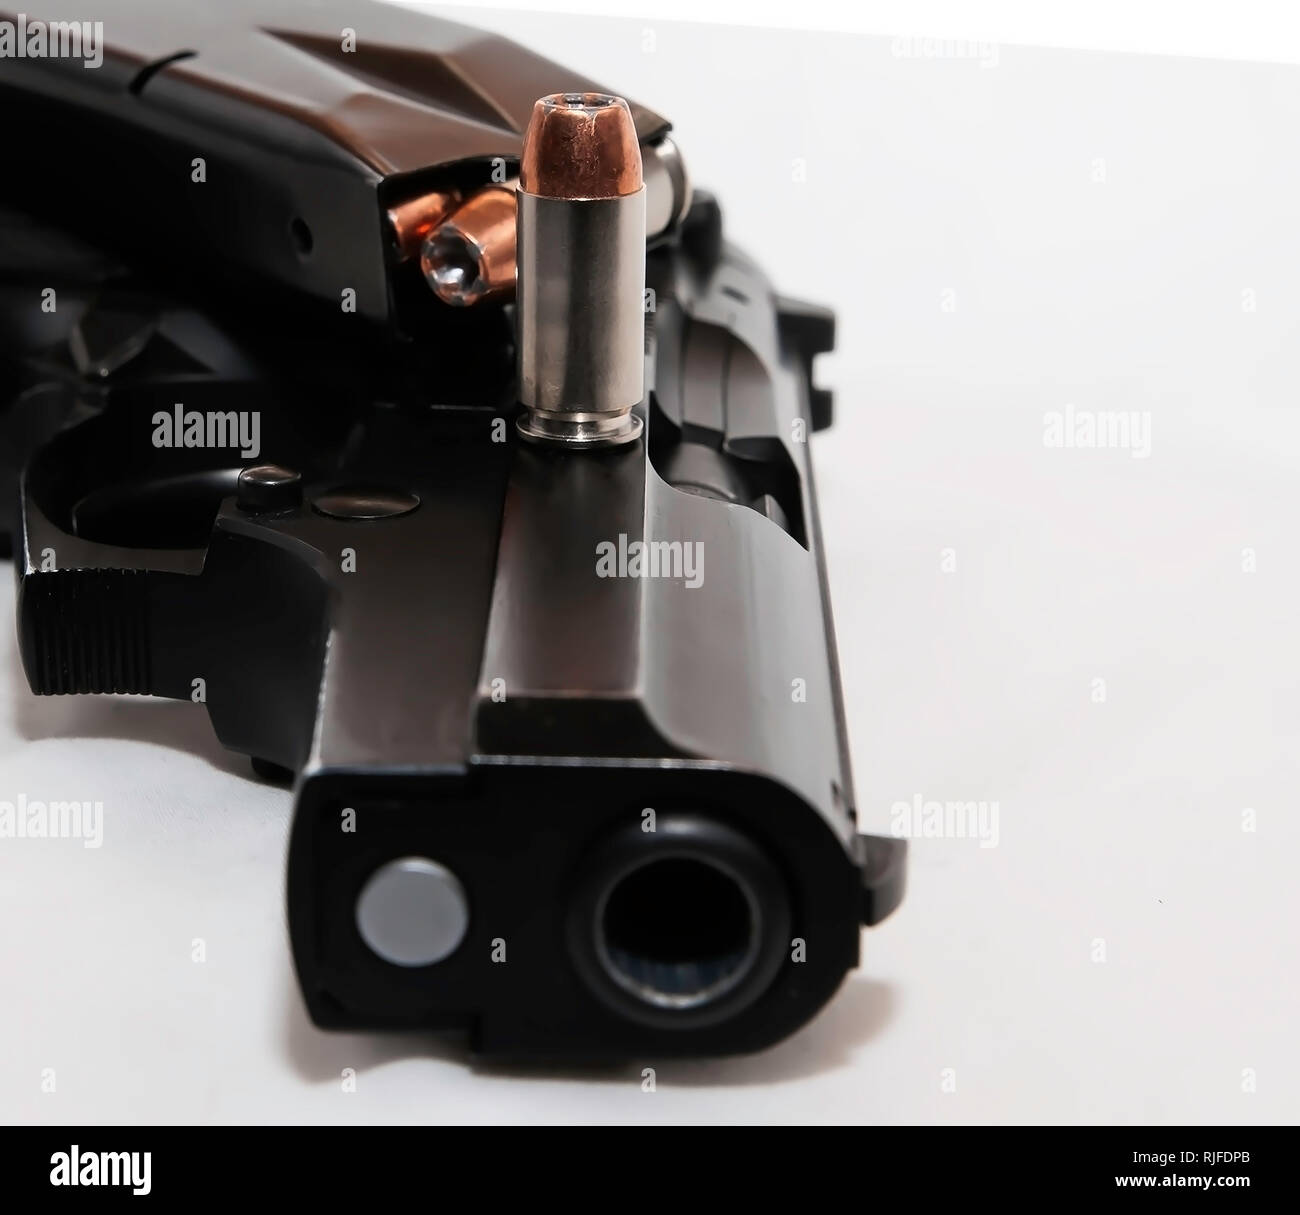 Eine schwarze 40 Kaliber Pistole auf die Seite mit einer geladenen Pistole Magazin auf es mit einem einzigen 40 Kaliber auf weißem Hintergrund Stockfoto